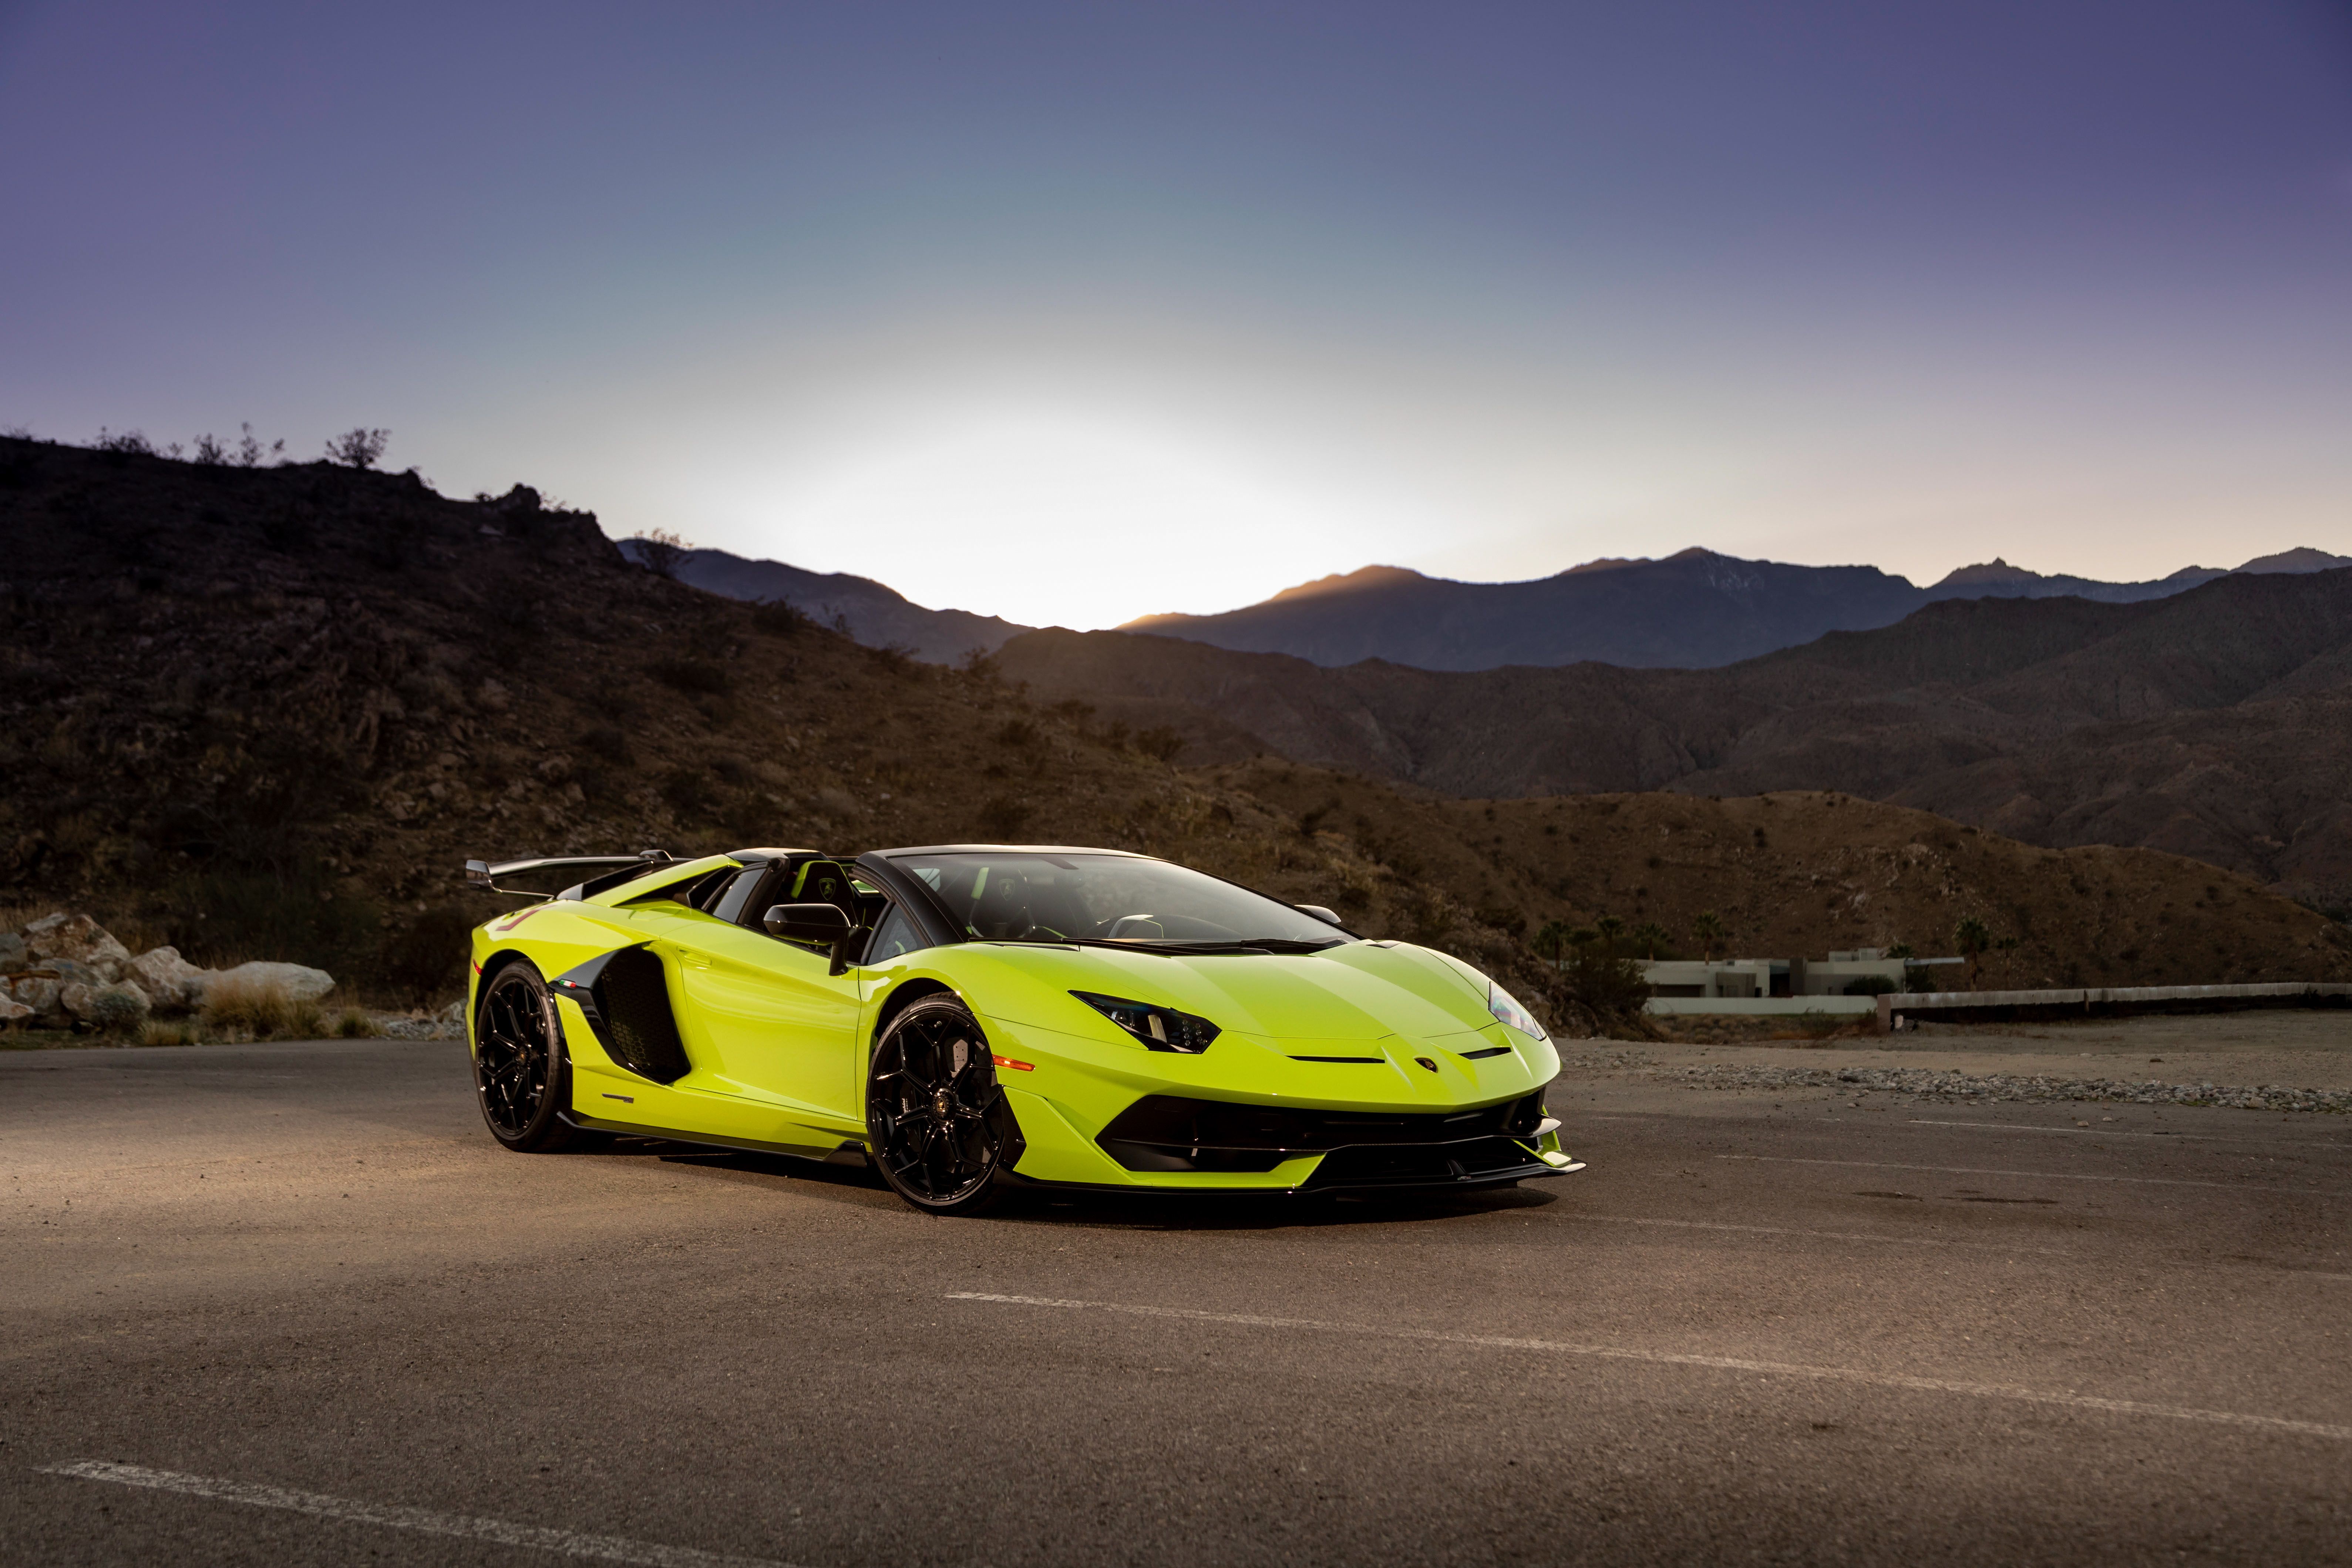 Download mobile wallpaper Lamborghini, Car, Supercar, Lamborghini Aventador, Vehicles, Yellow Car, Lamborghini Aventador Svj for free.